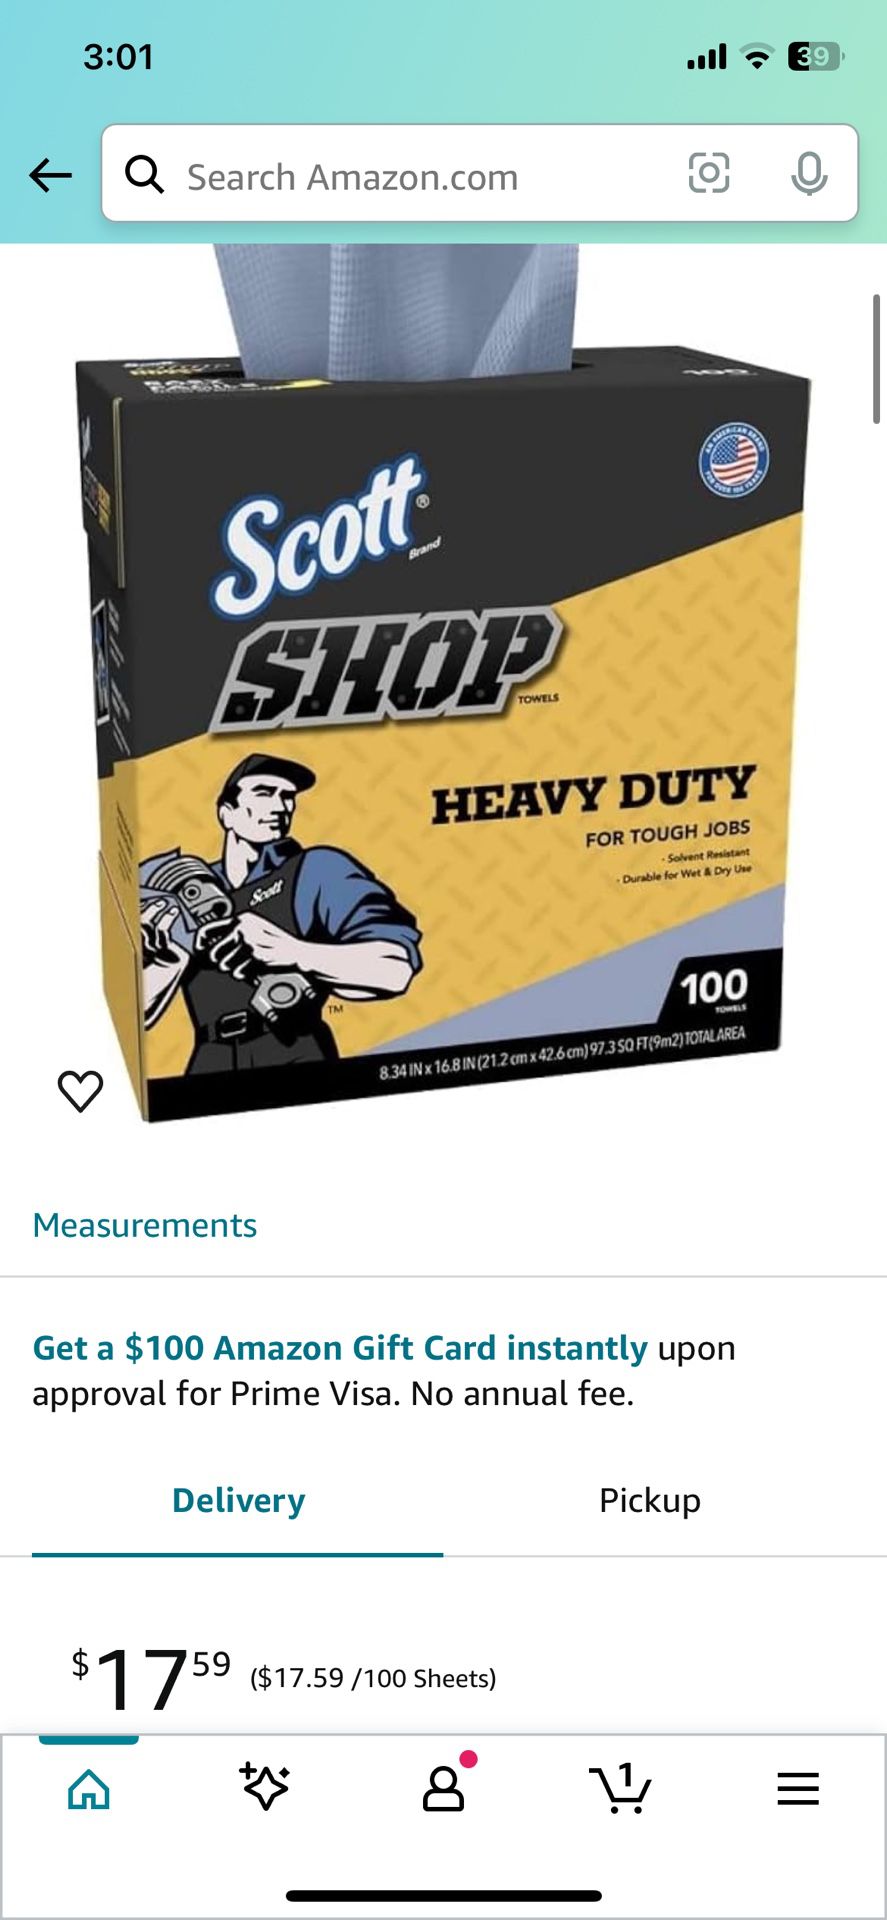 Scott Shop Heavy Duty Towels 